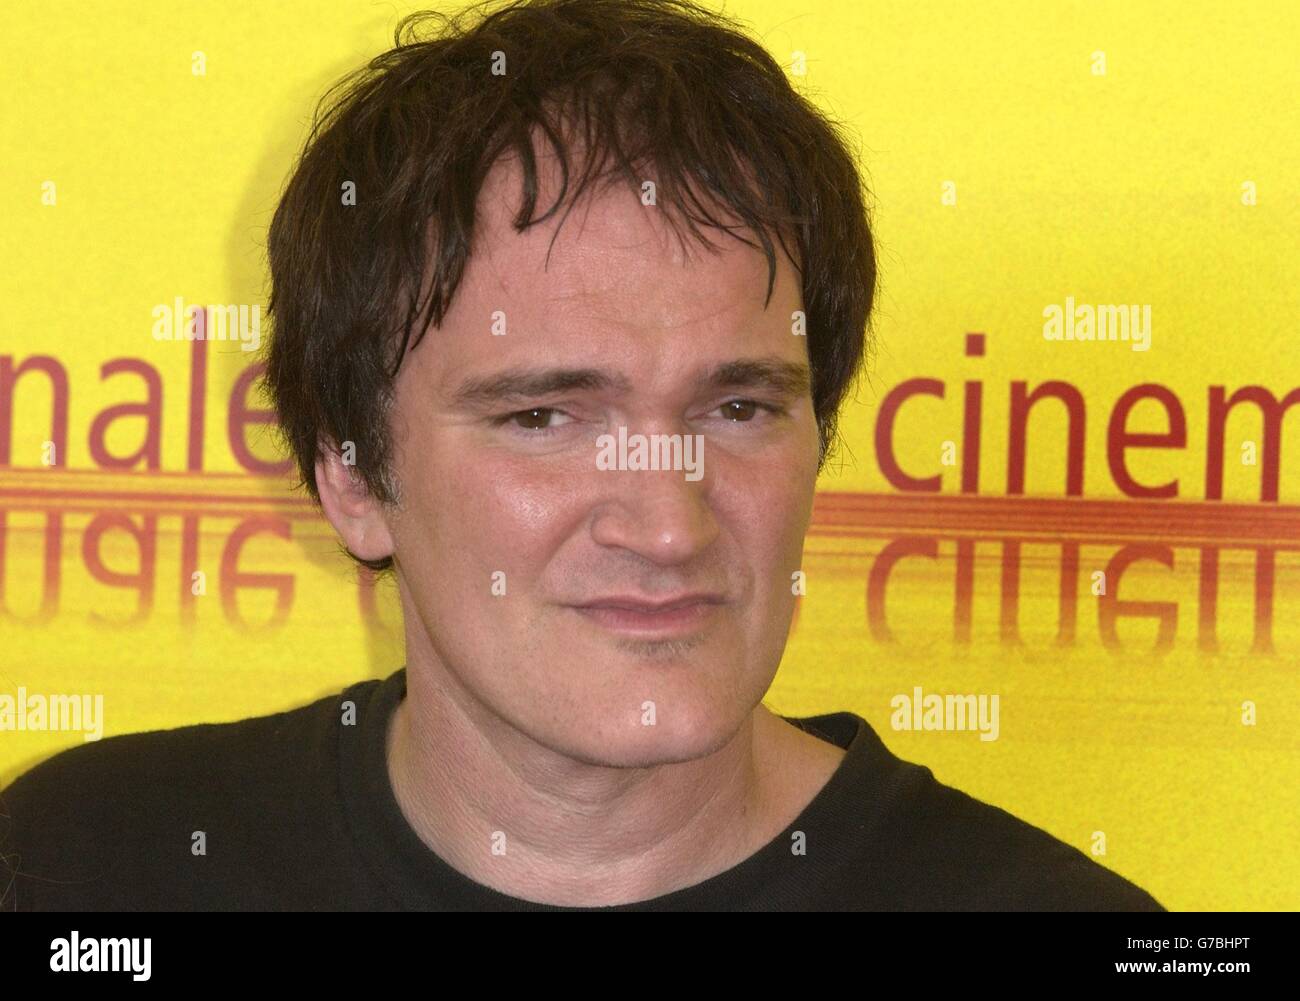 Quentin Tarantino lors d'un photocall pour promouvoir l'histoire secrète du cinéma italien - Roi italien des B, lors du 61e Festival du film de Venise au Lido à Venise. Banque D'Images